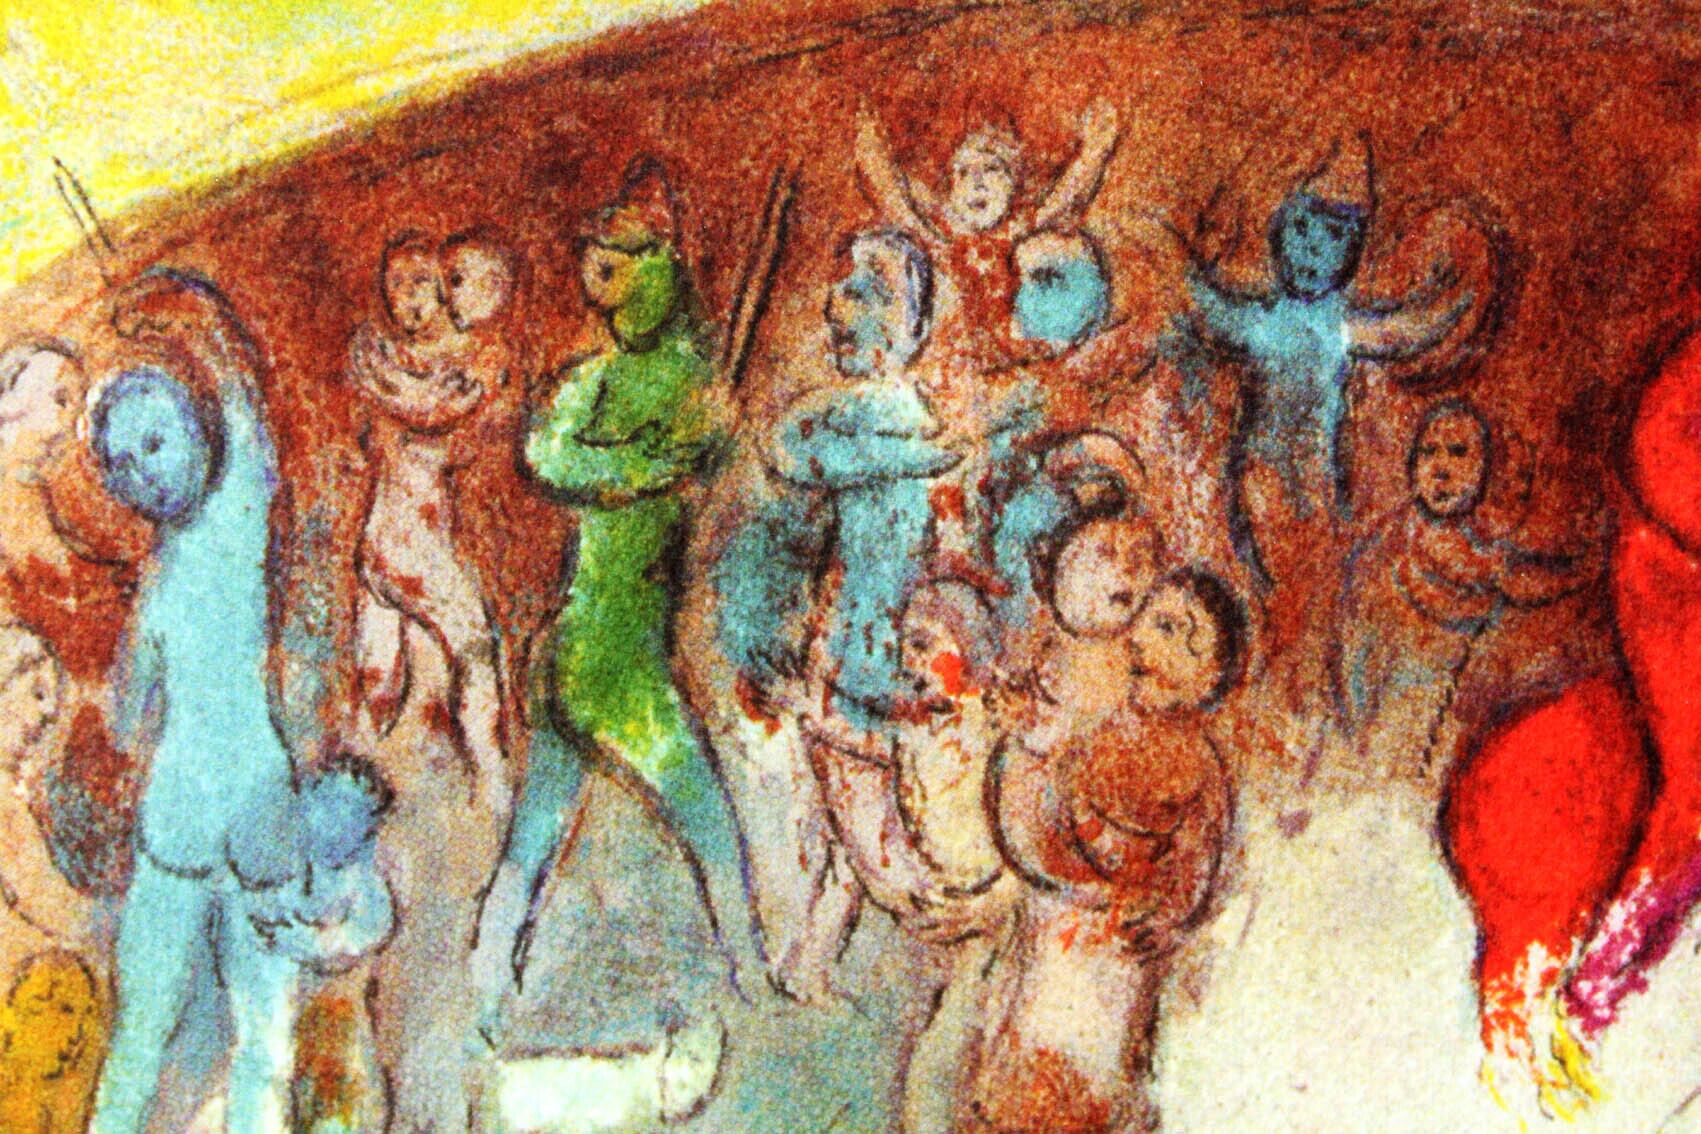 マルク・シャガール絵画「捕らわれのクロエ」作品証明書・展示用フック・限定375部エディション付複製画ジークレ